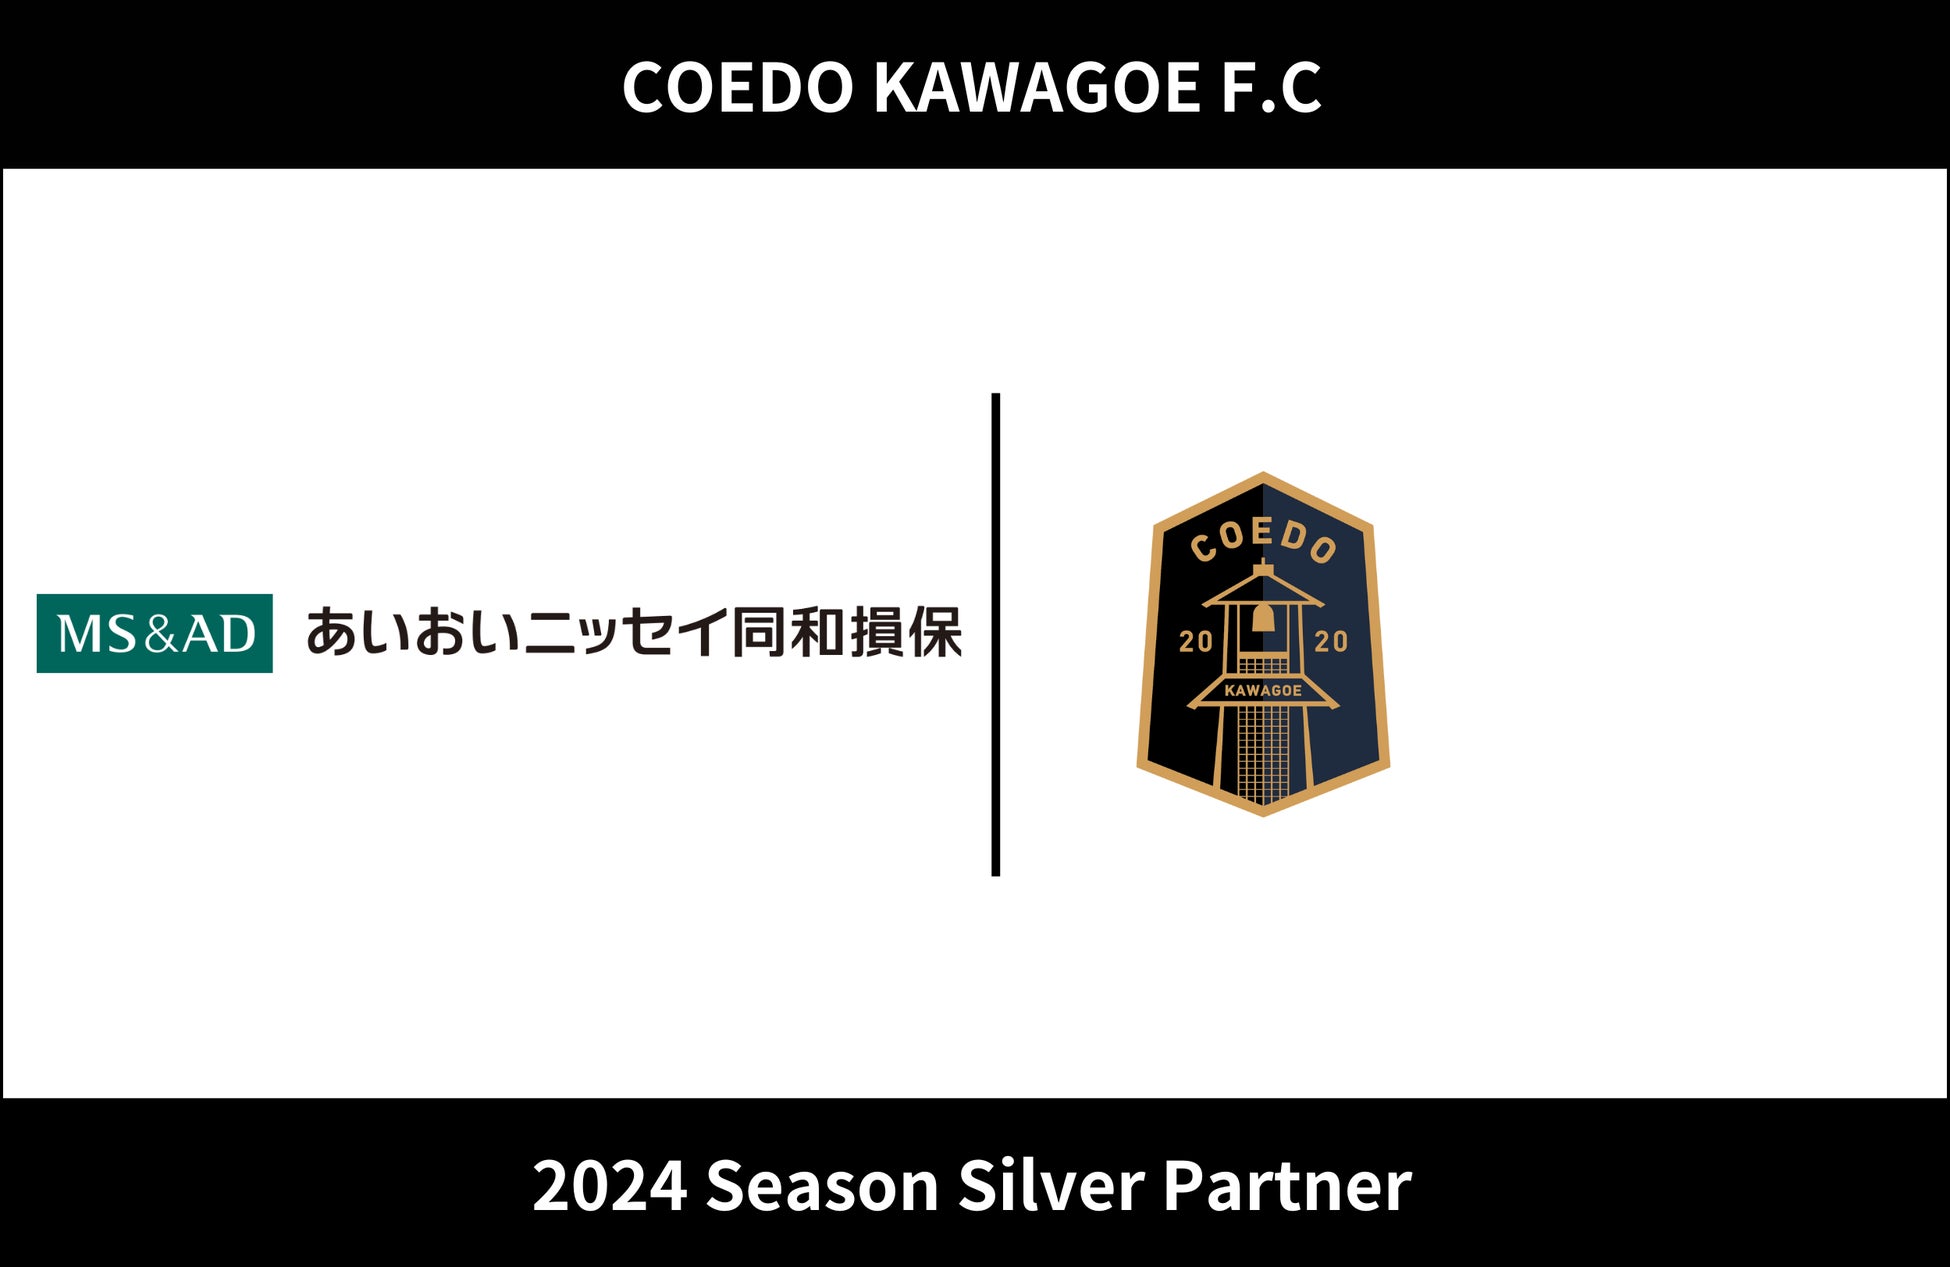 埼玉県川越市からJリーグを目指す「COEDO KAWAGOE F.C」、損害保険サービスを展開するあいおいニッセイ同和損害保険株式会社と2024シーズンのシルバーパートナー契約を締結